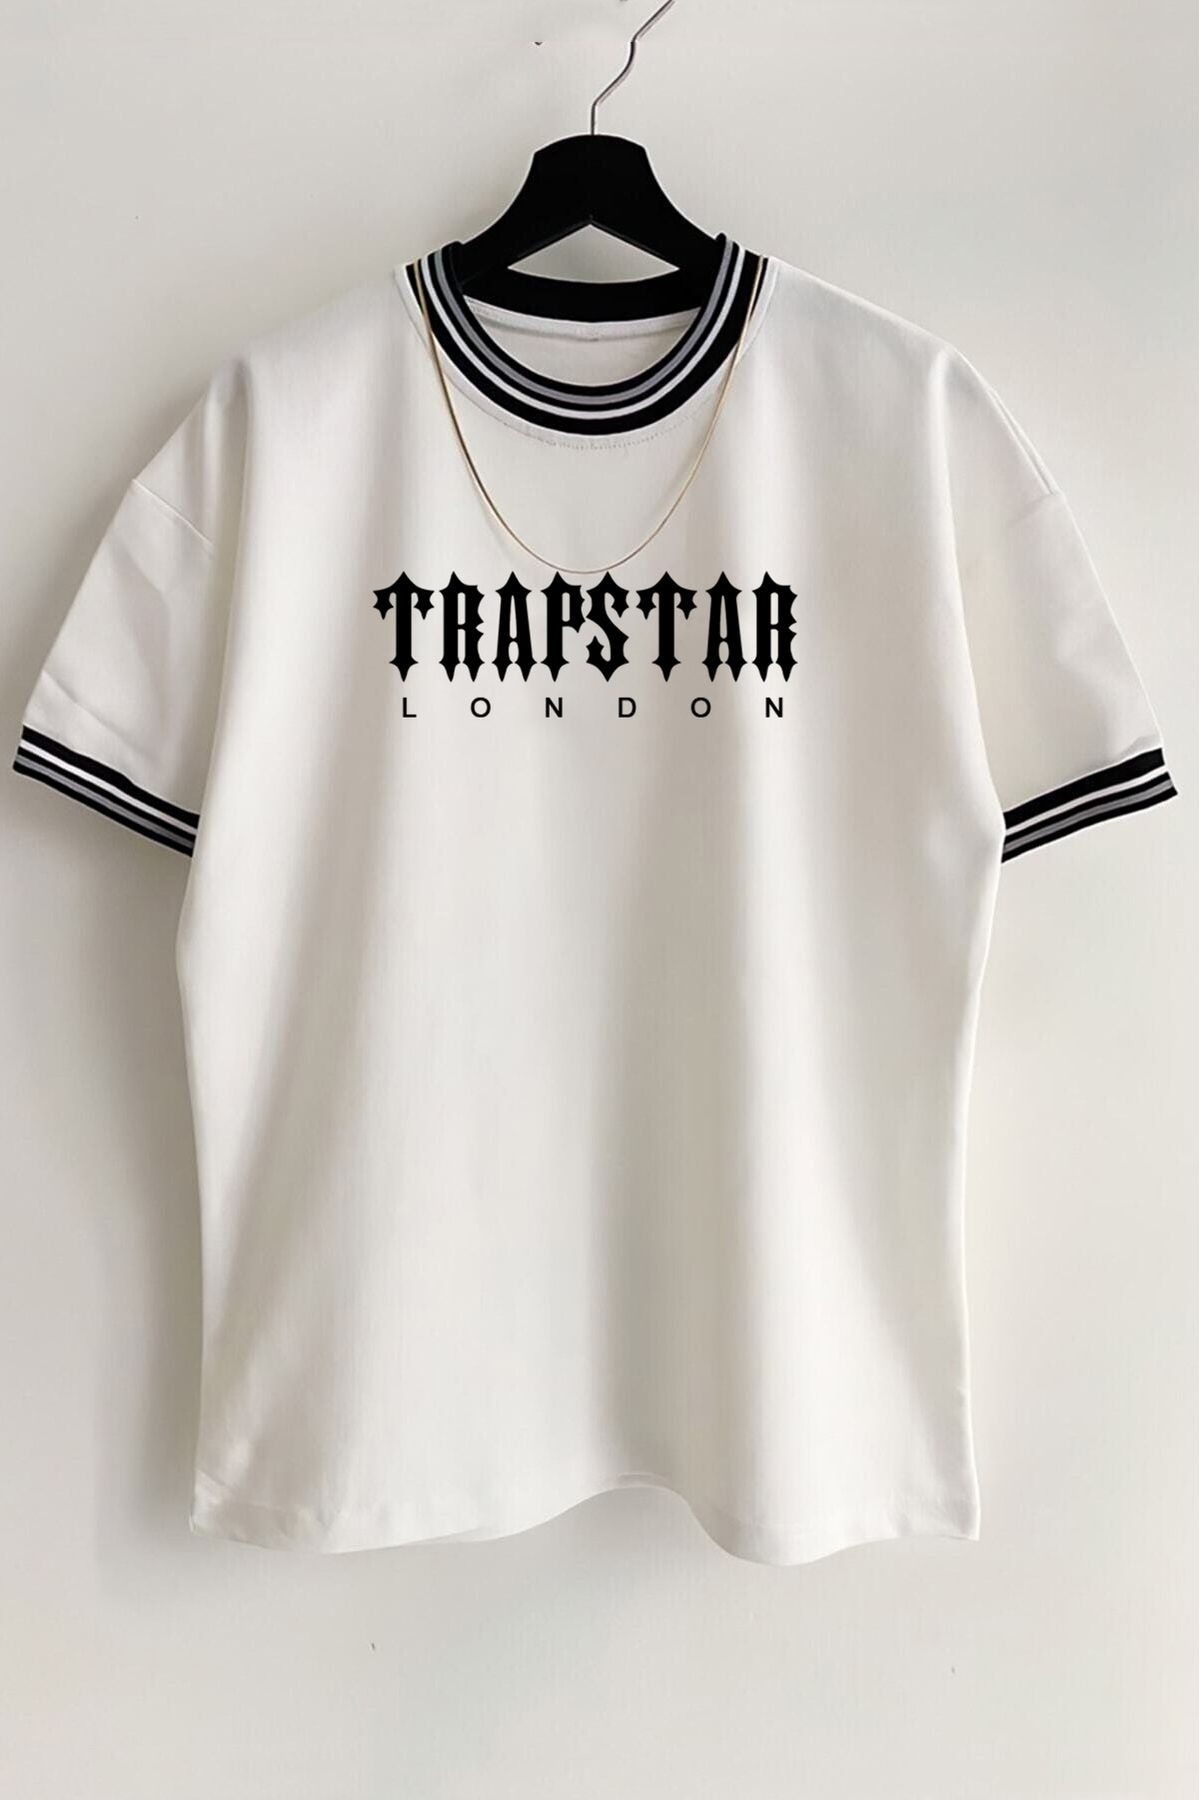 SEVLOVE Unisex Beyaz Yeni Sezon Trapstar Baskılı Oversize Yazlık T-shirt